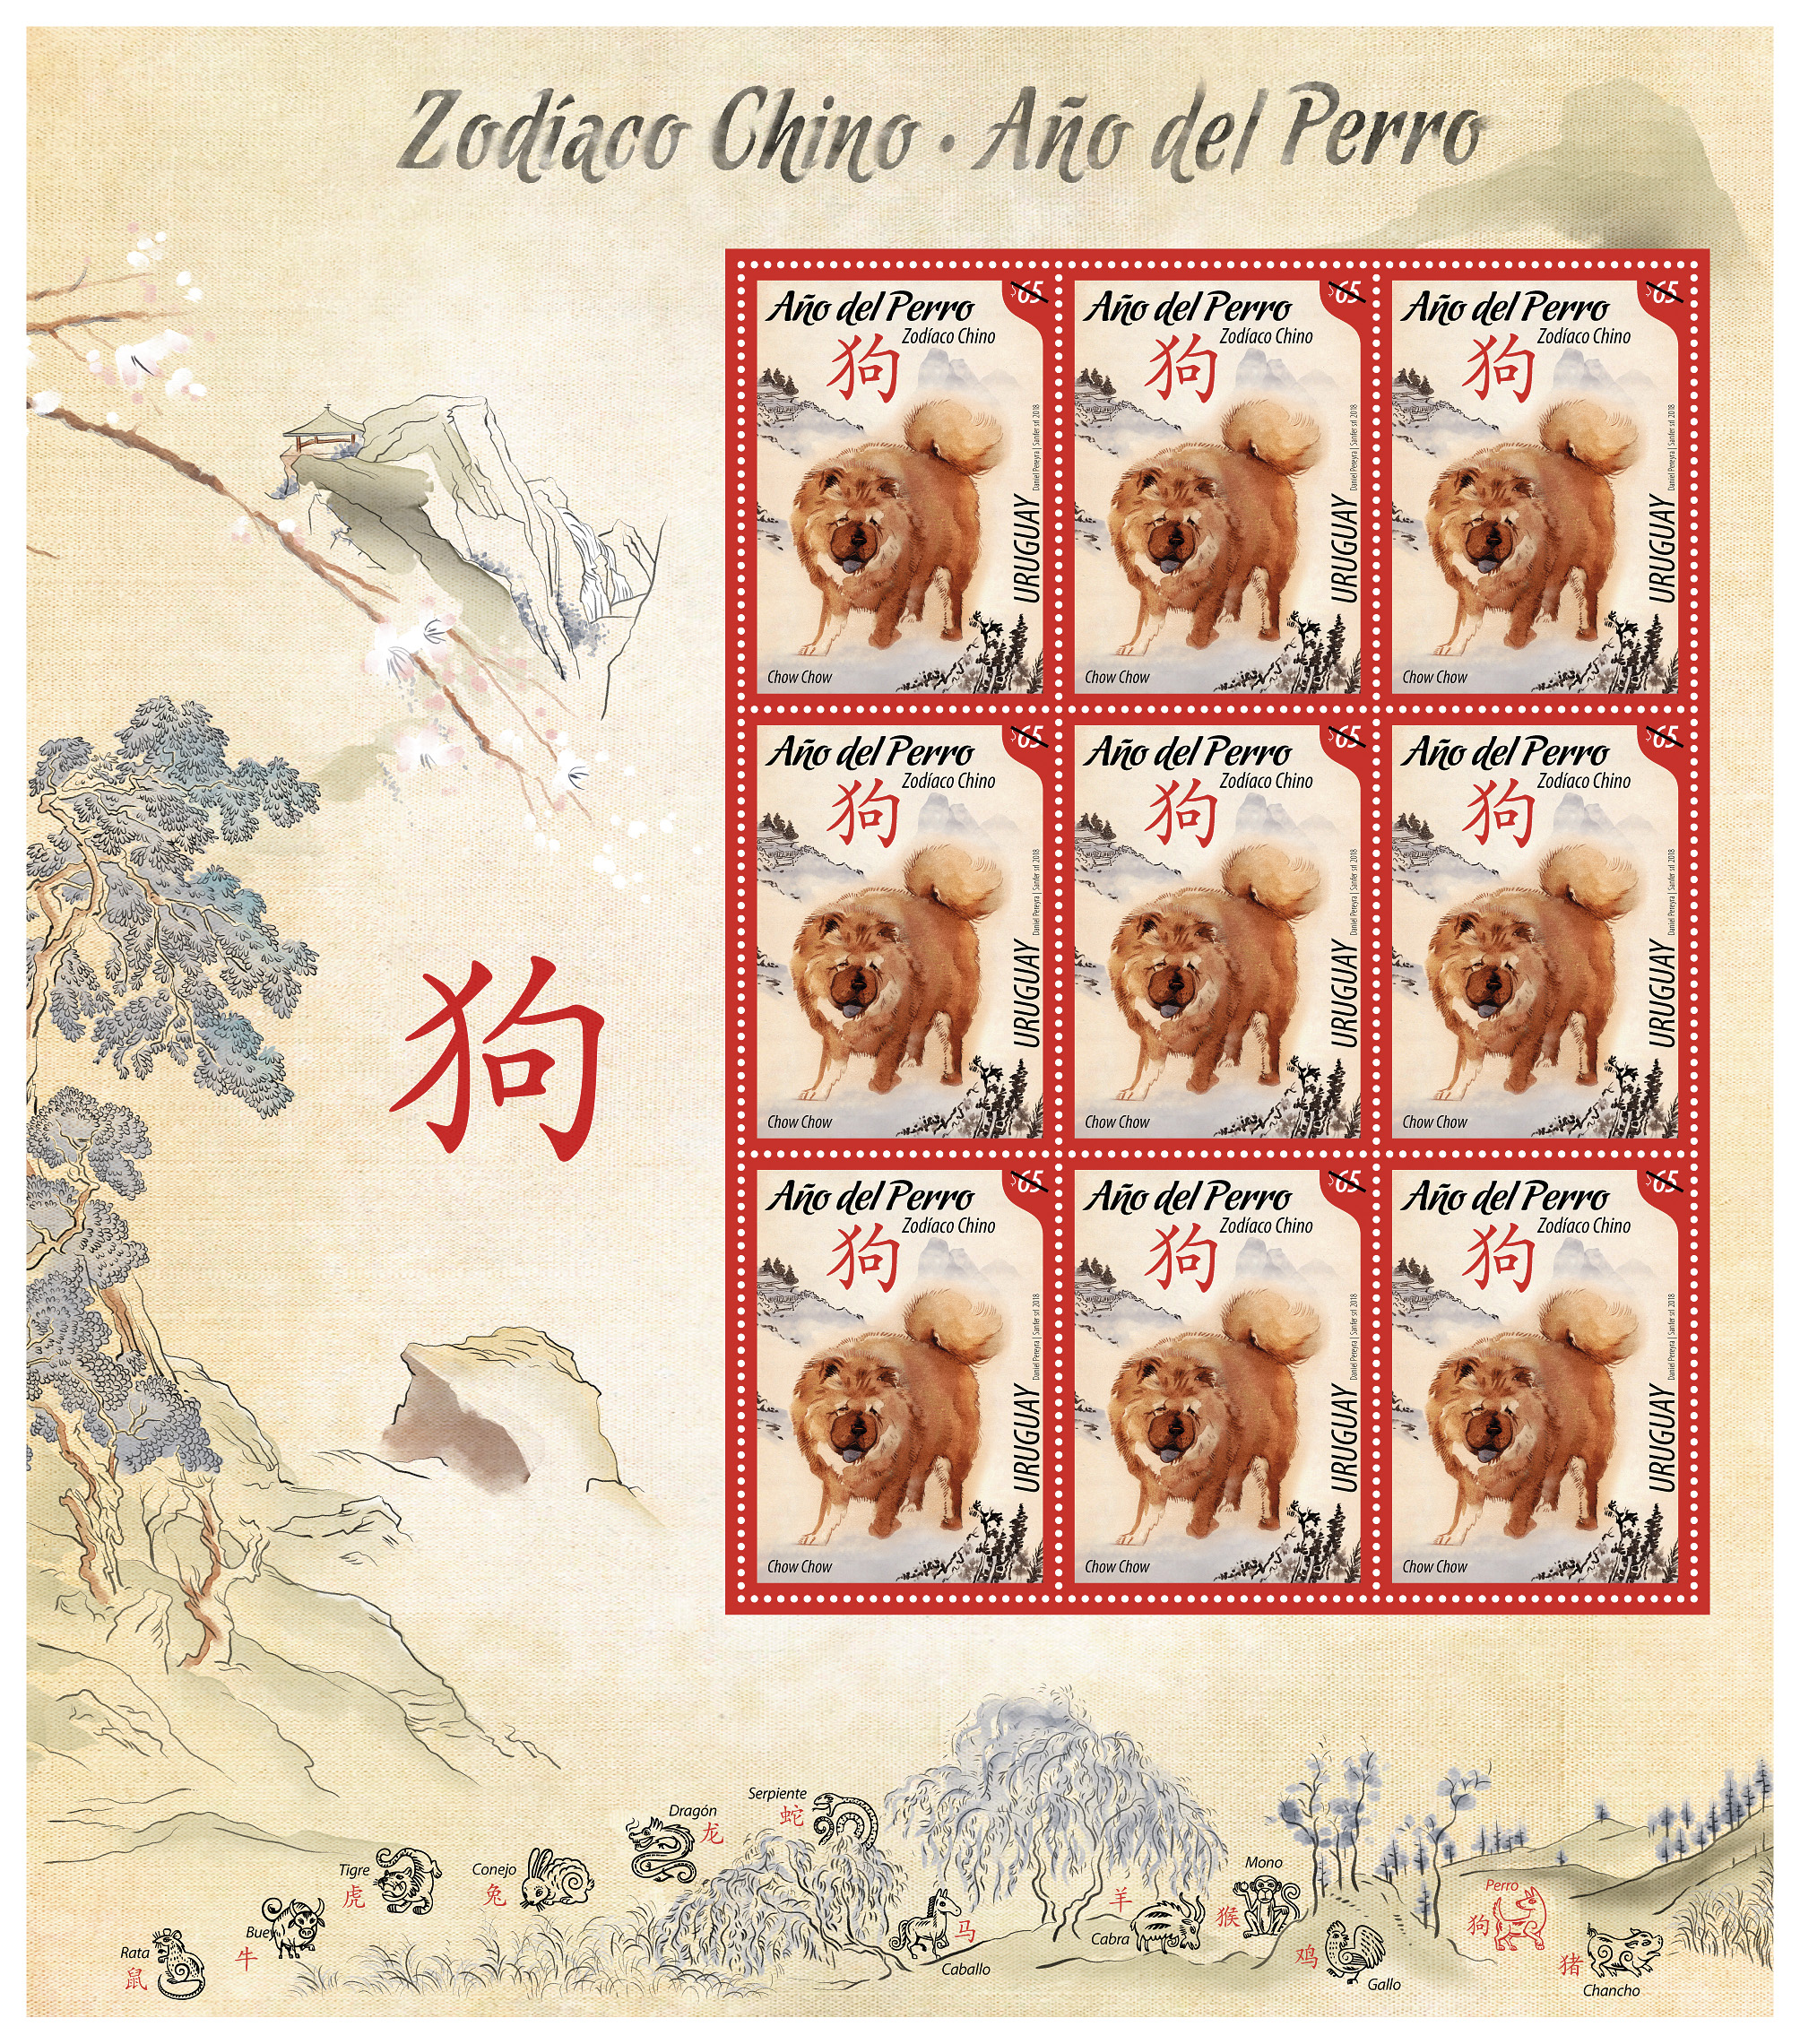 Plancha de sellos del Año del Perro, zodíaco chino.